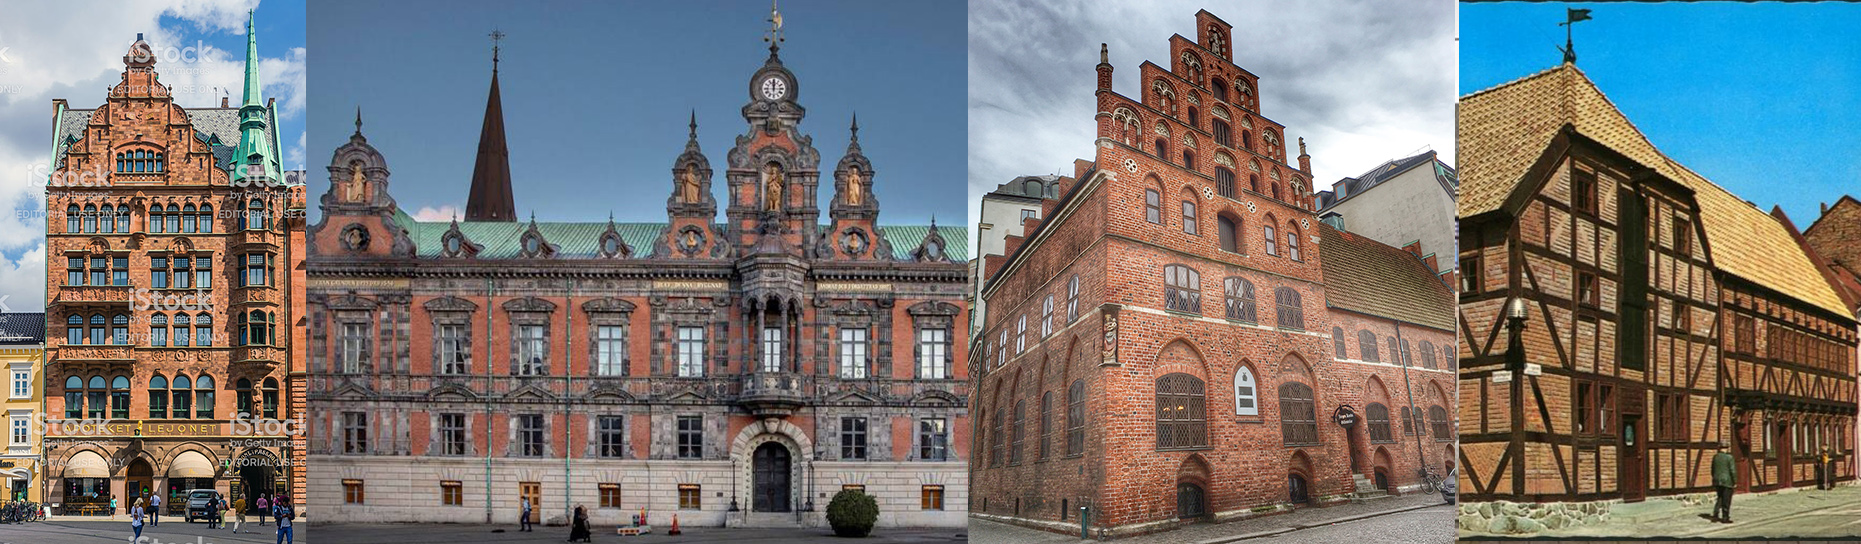 Lista- vilka är Malmös vackraste byggnader?